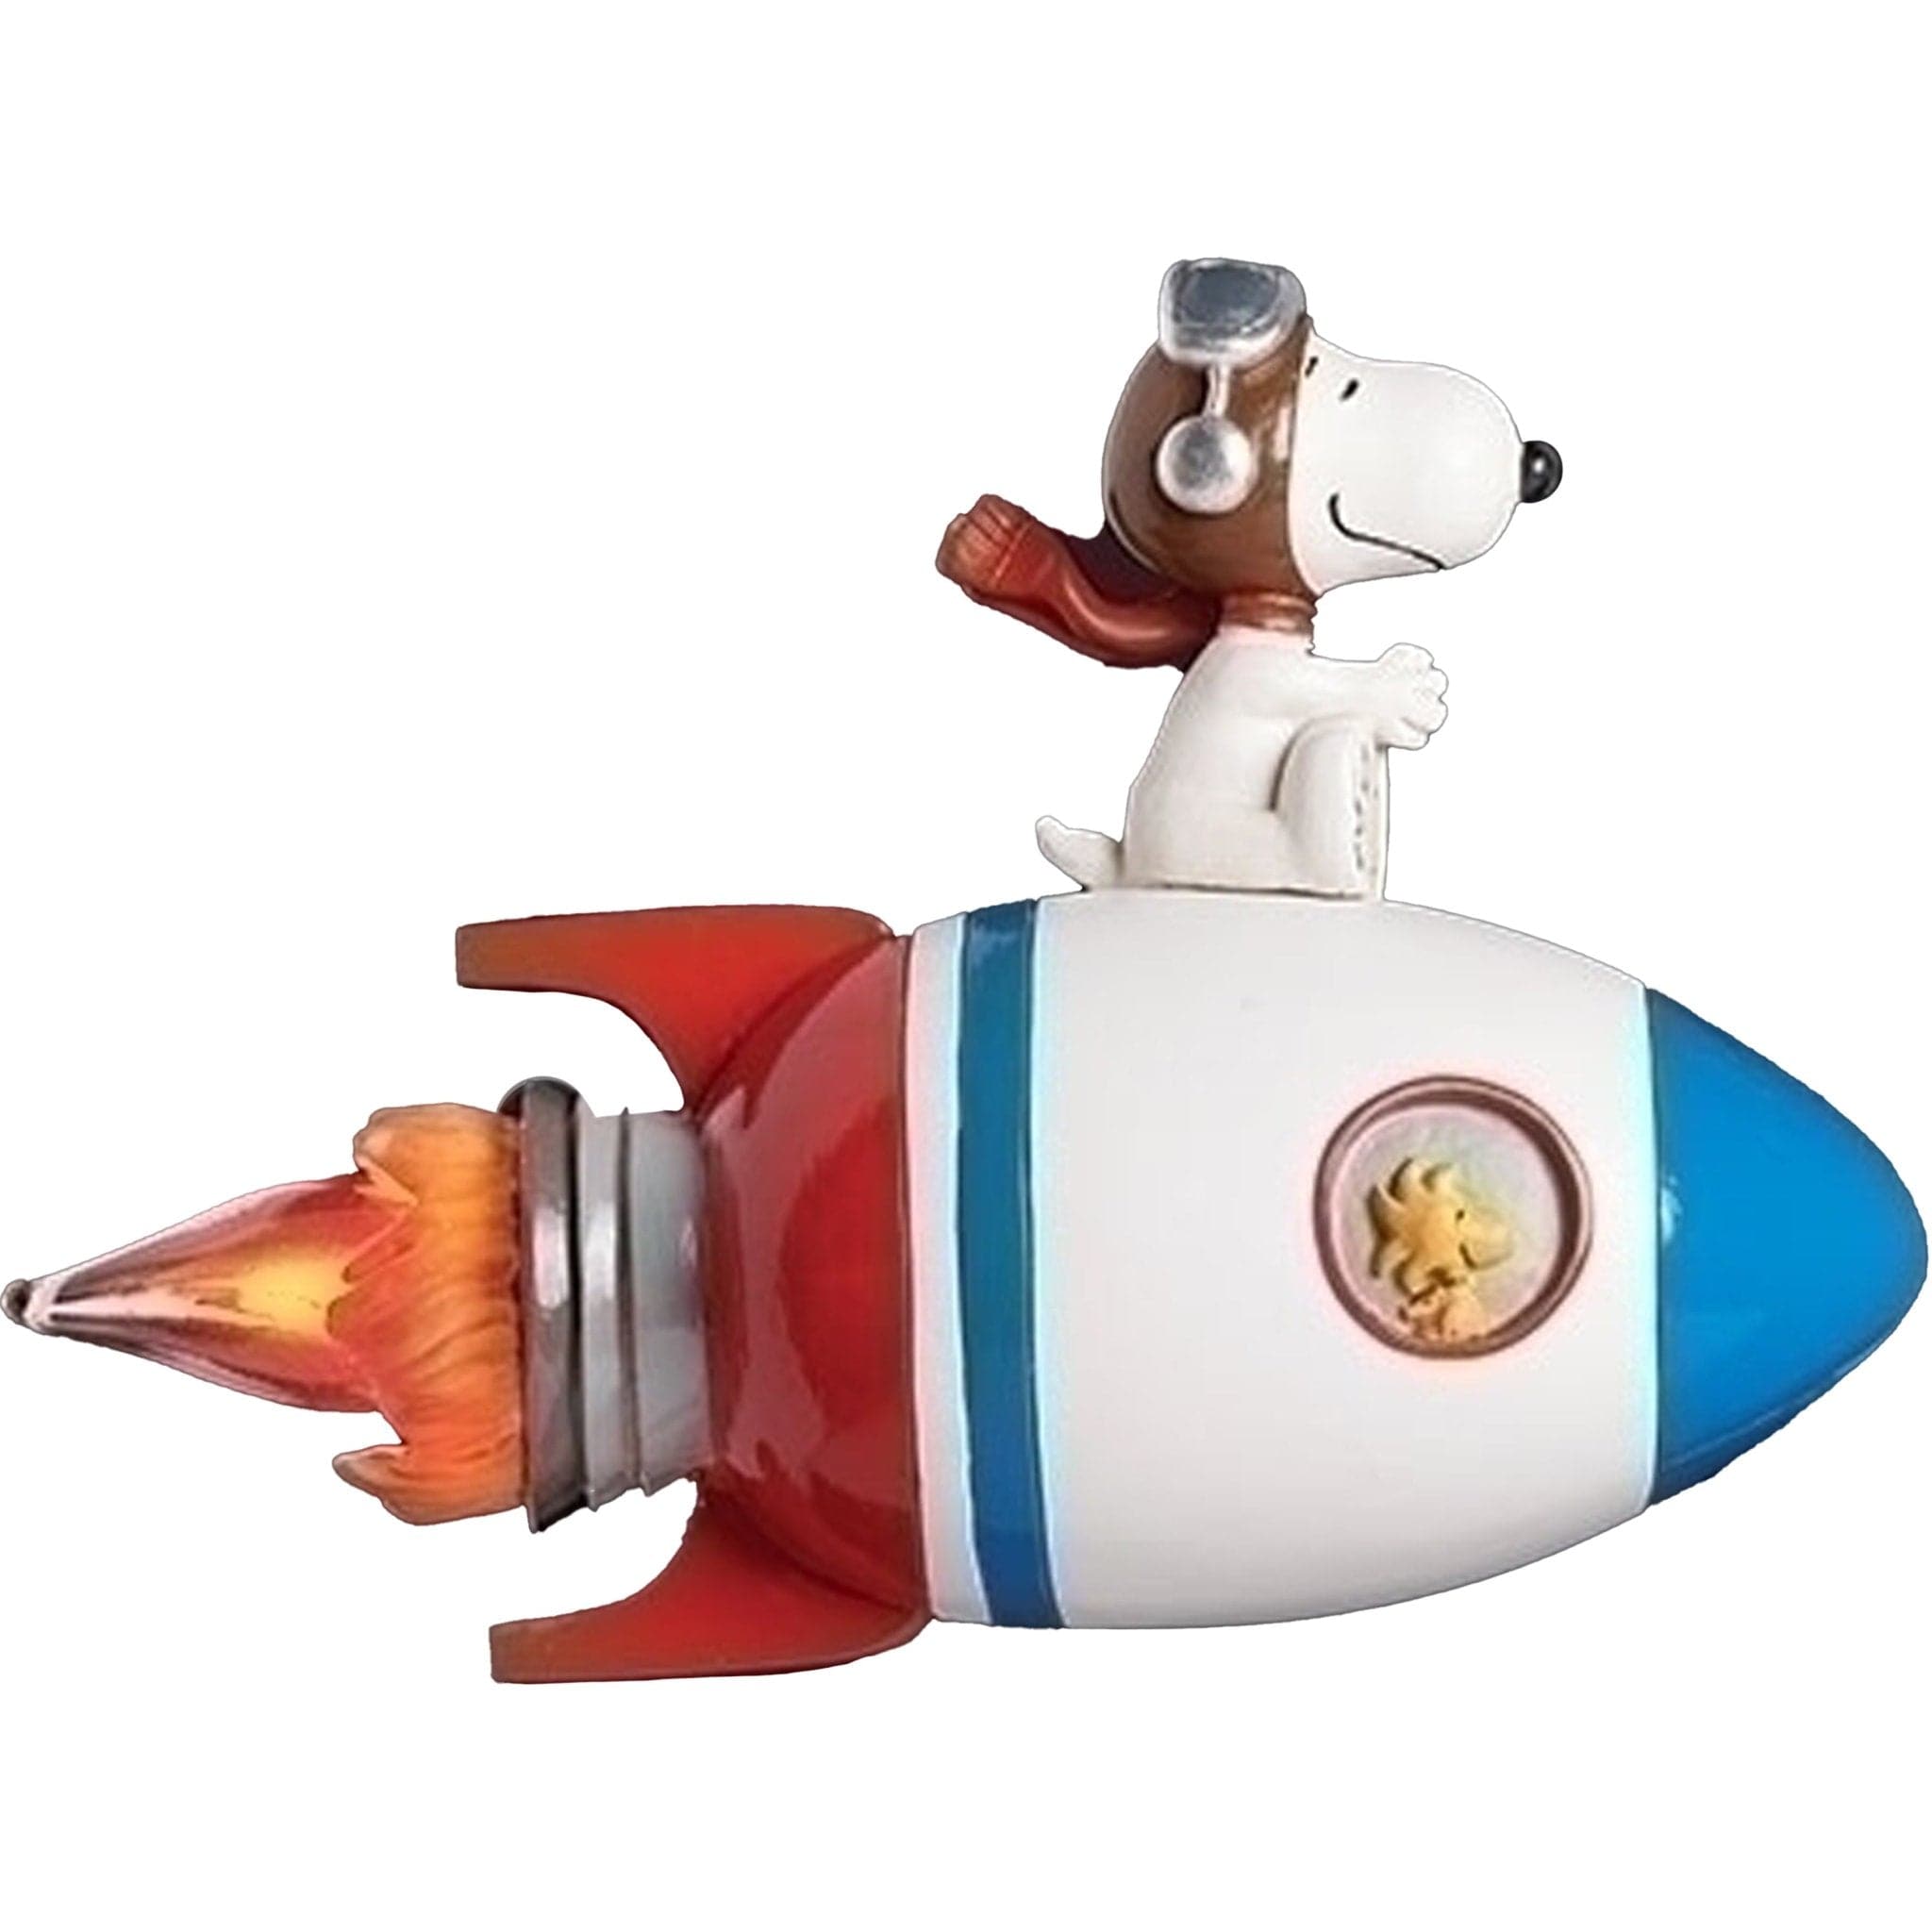 4" Snoopy Rocket Nightlight